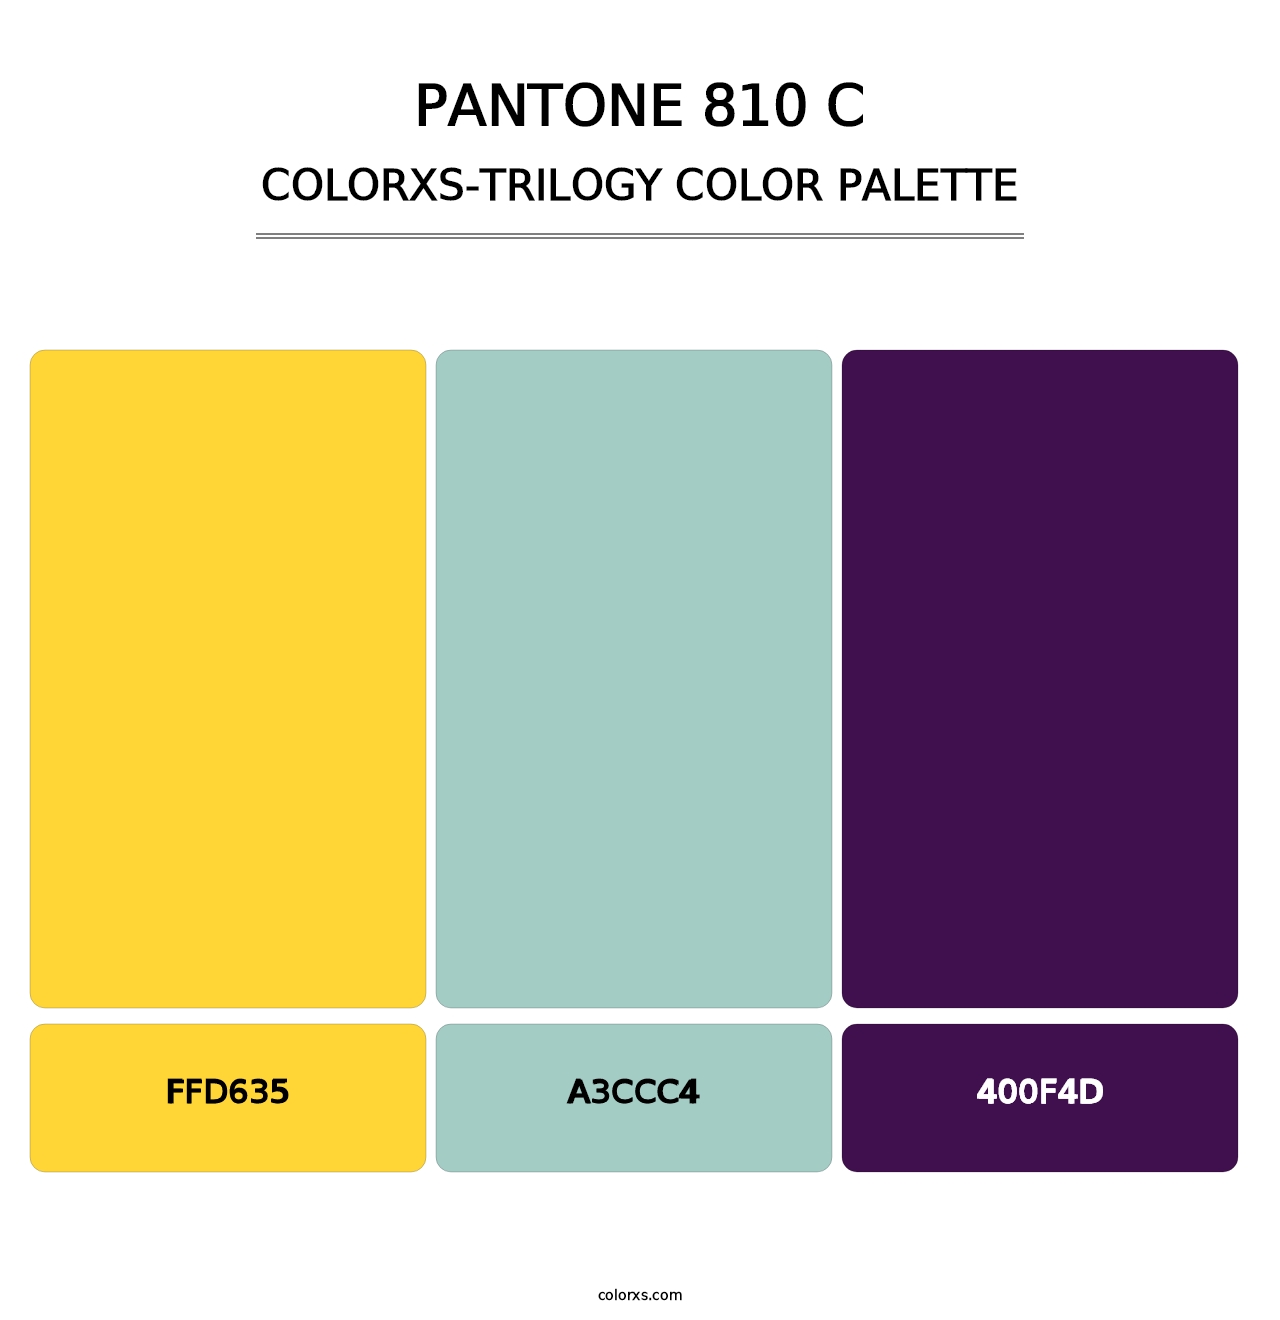 PANTONE 810 C - Colorxs Trilogy Palette